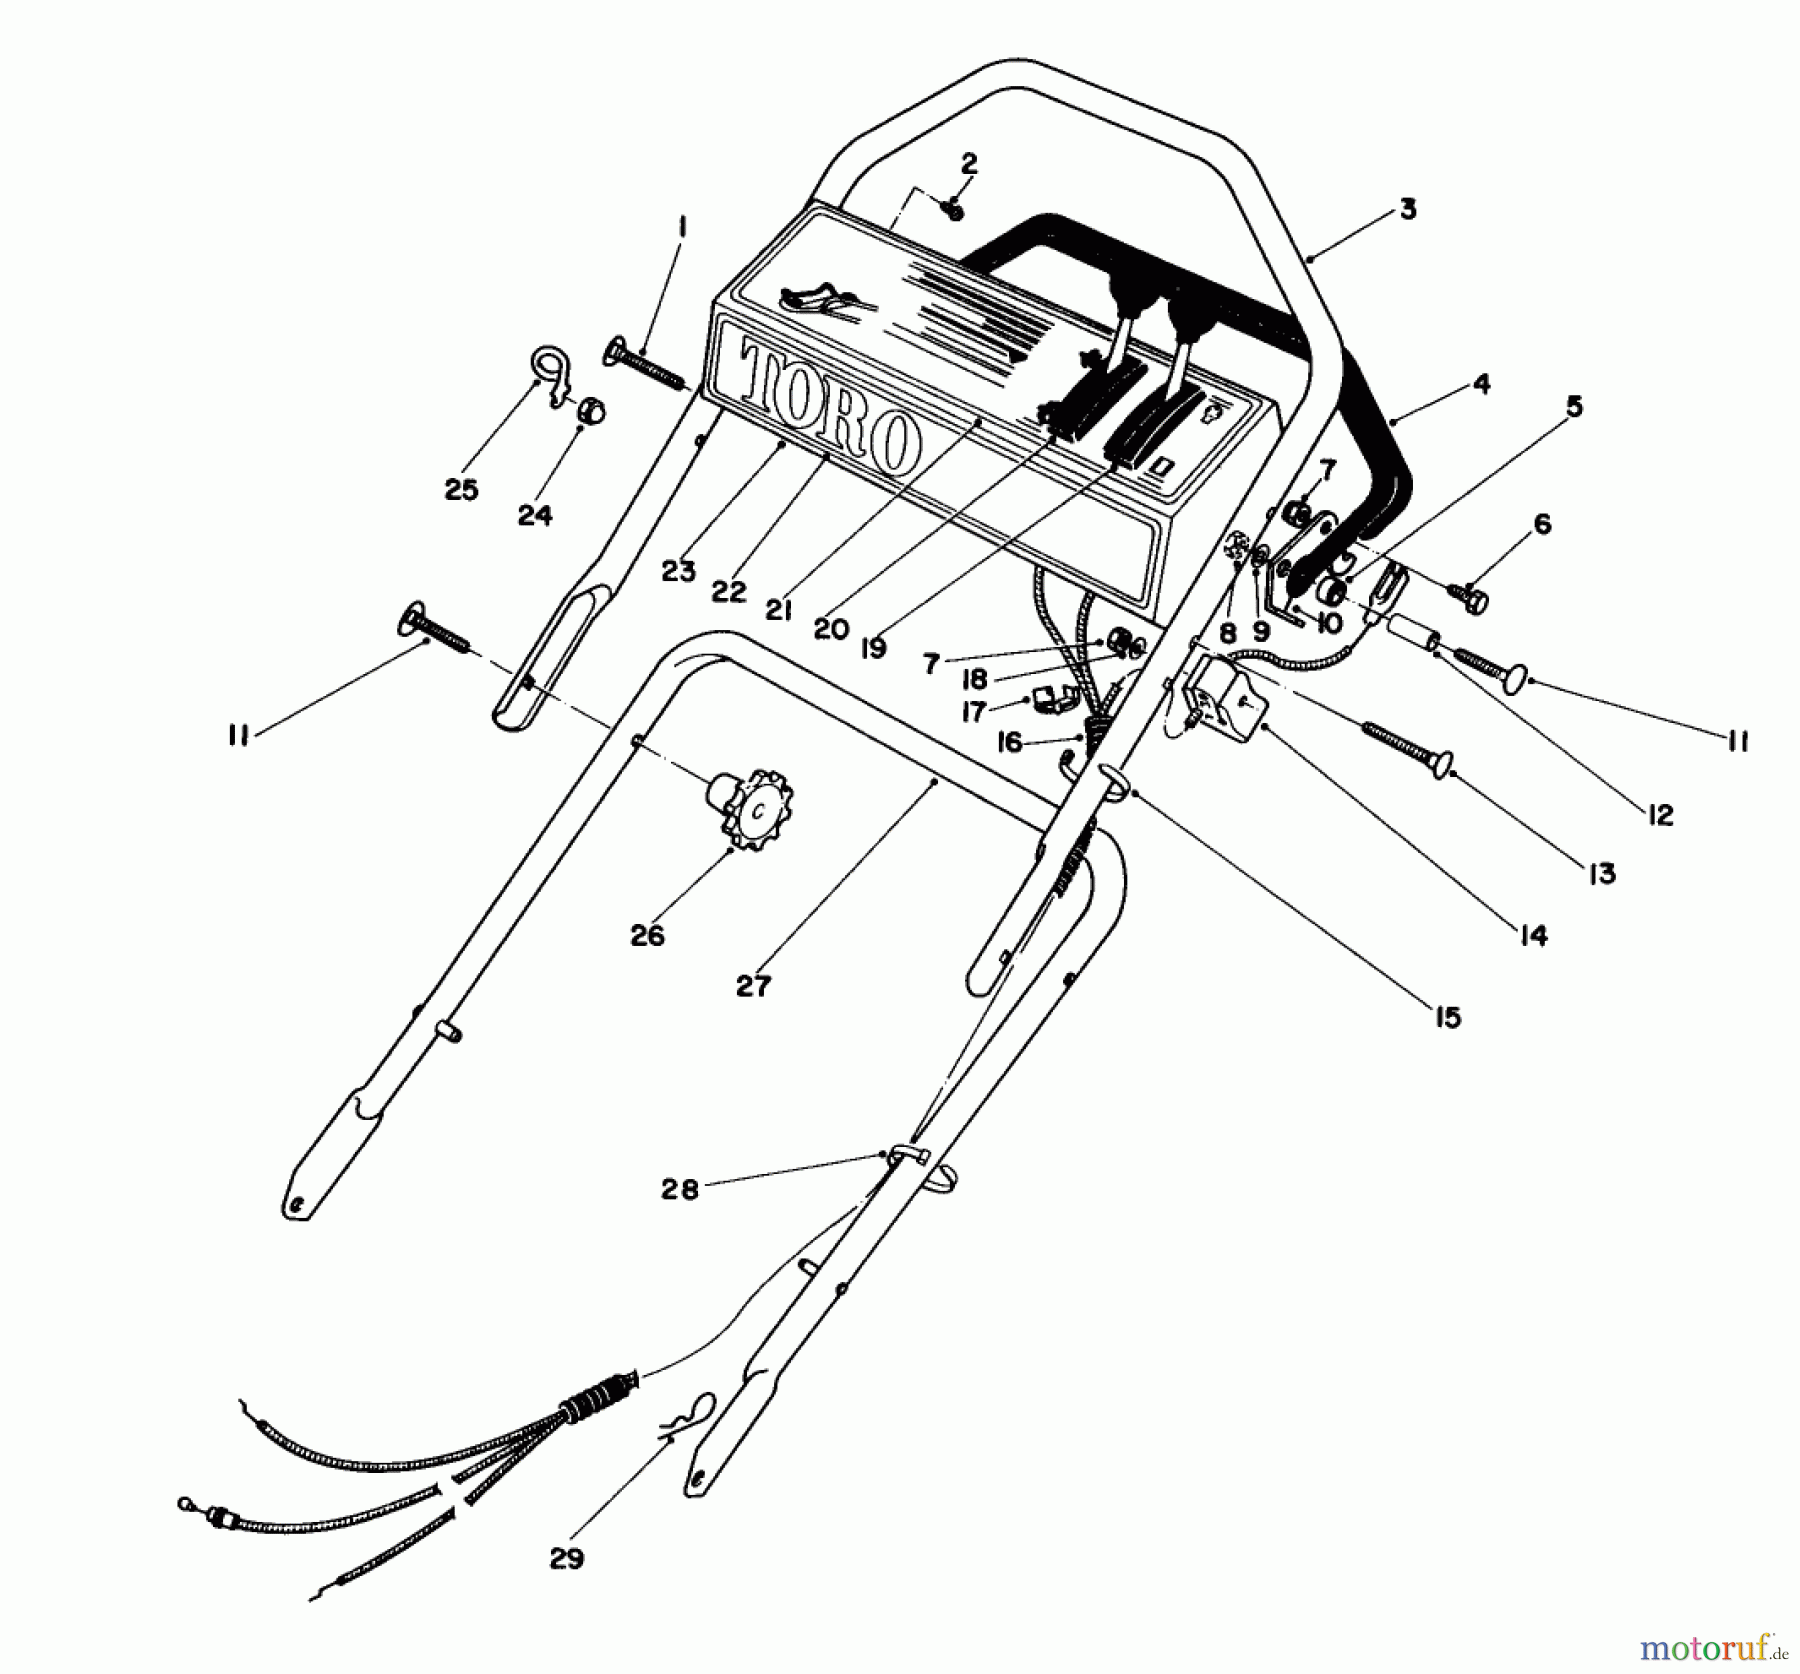  Toro Neu Mowers, Walk-Behind Seite 1 16780 - Toro Lawnmower, 1983 (3000001-3999999) HANDLE ASSEMBLY